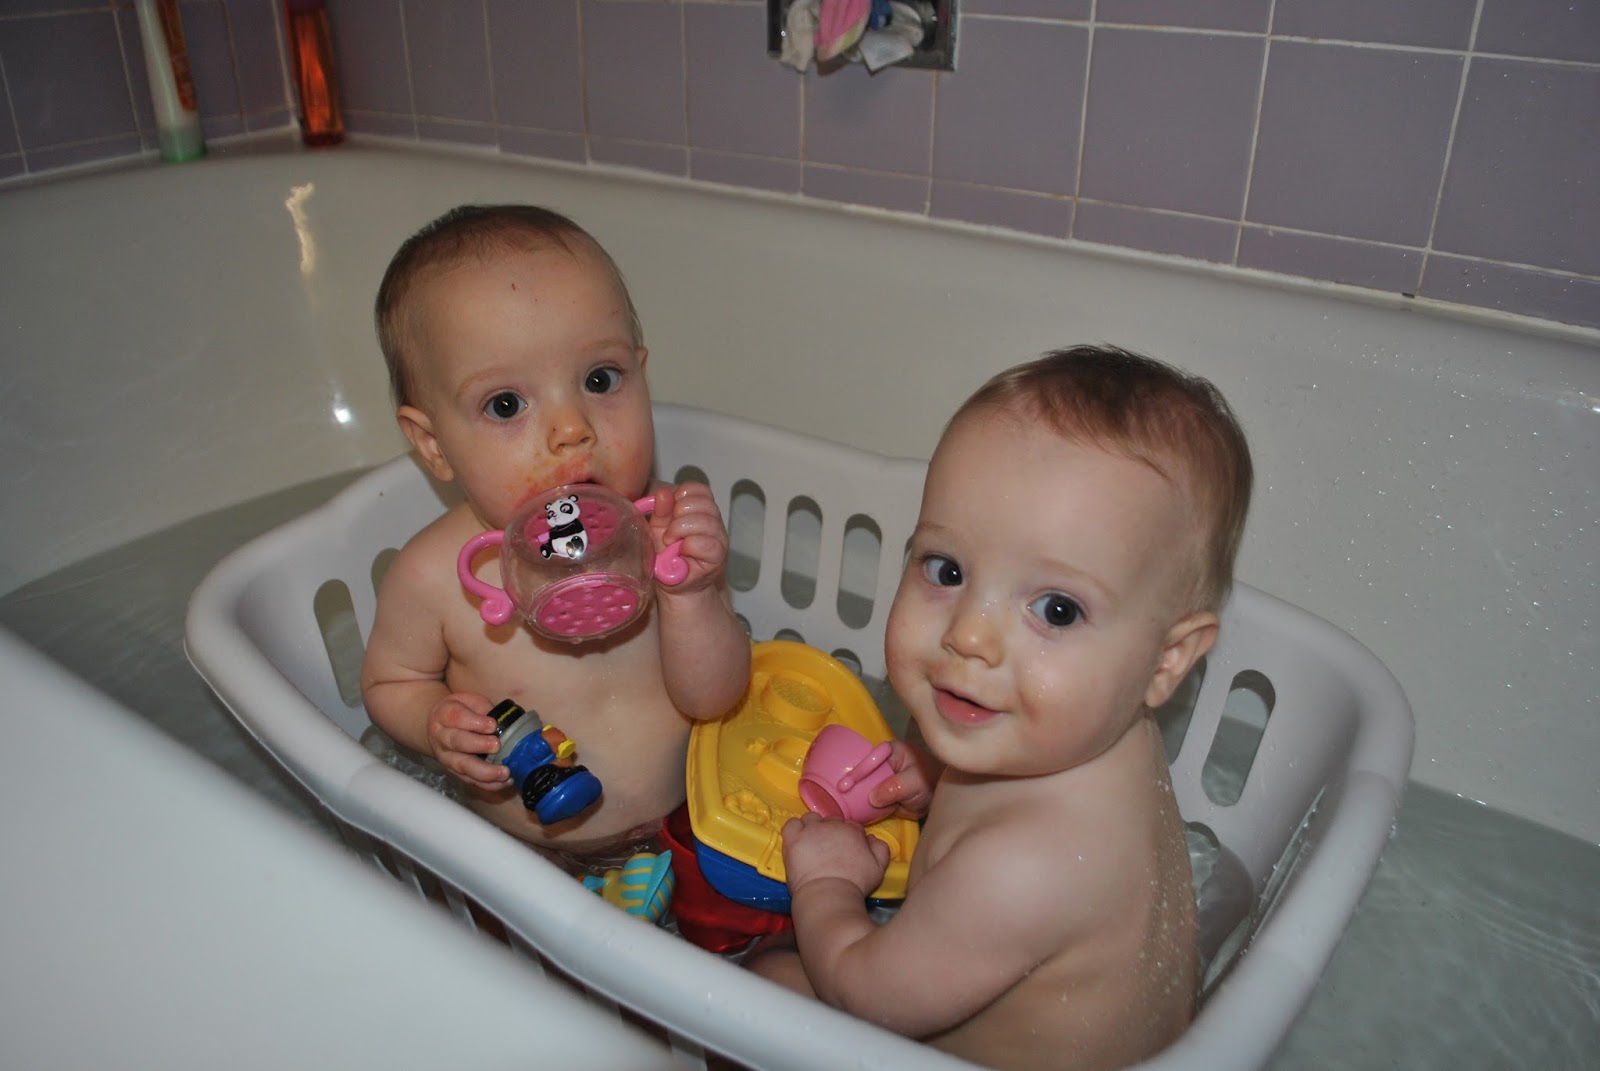 Rub-A-Dub-Dub Two Girls In A Tub, $N-2014-04-26-16h22m50s159 @iMGSRC.RU